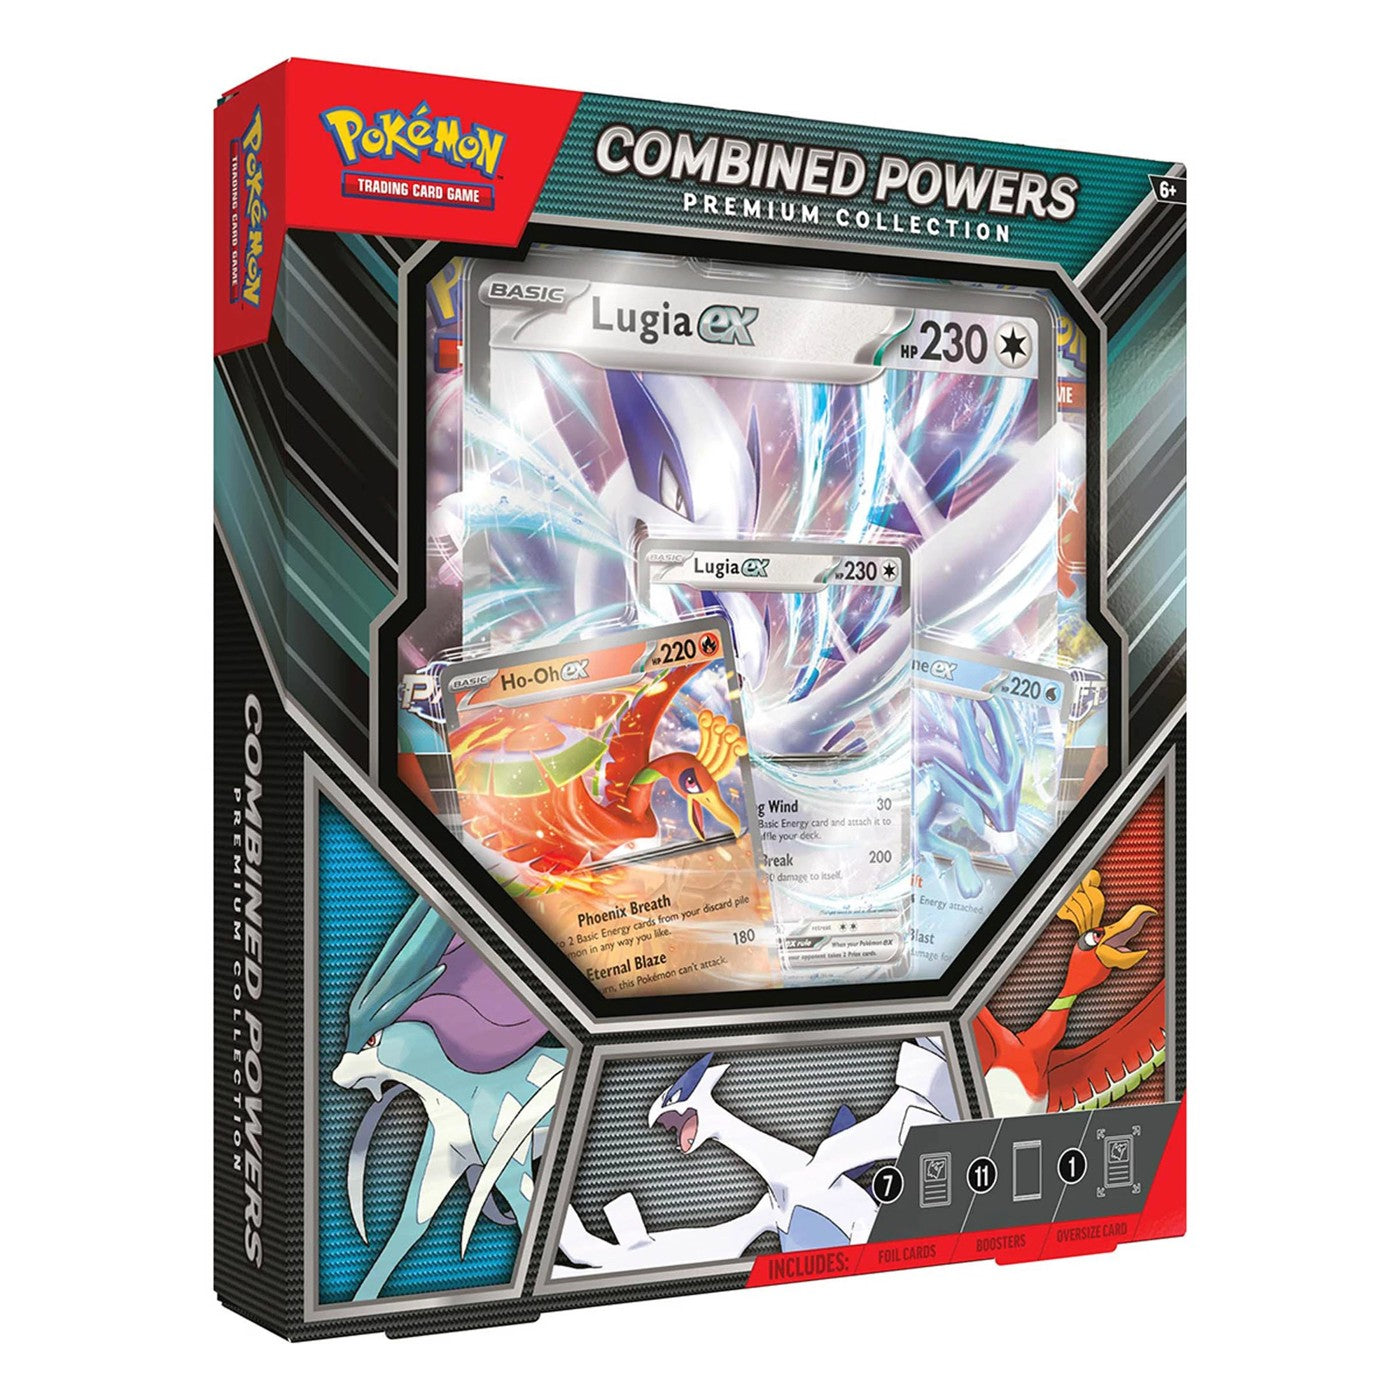 Combined Powers Premium Collection - Pokemon TCG